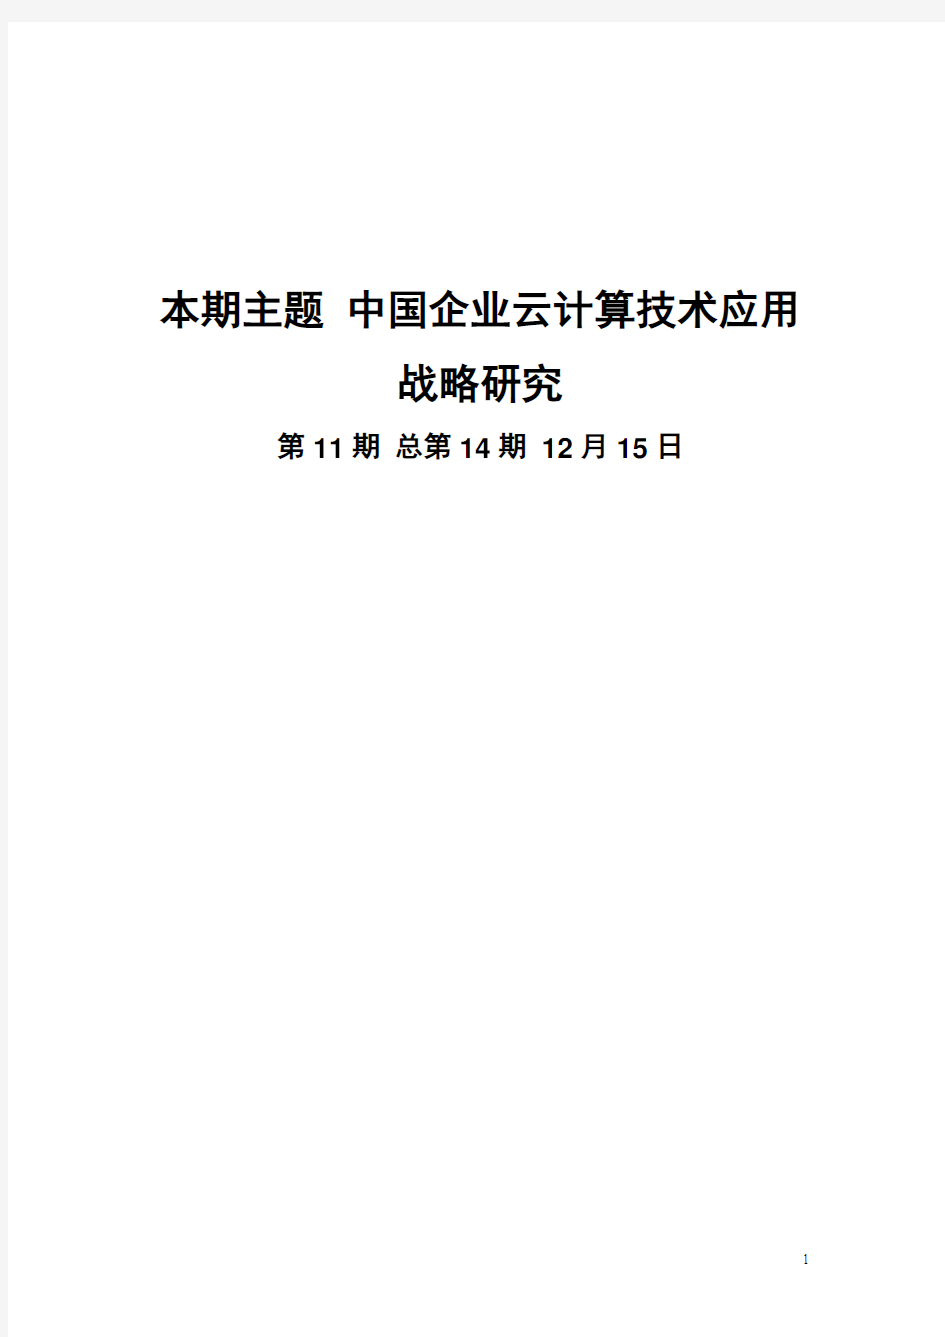 赛迪顾问-信息化研究-中国企业云计算技术应用战略研究